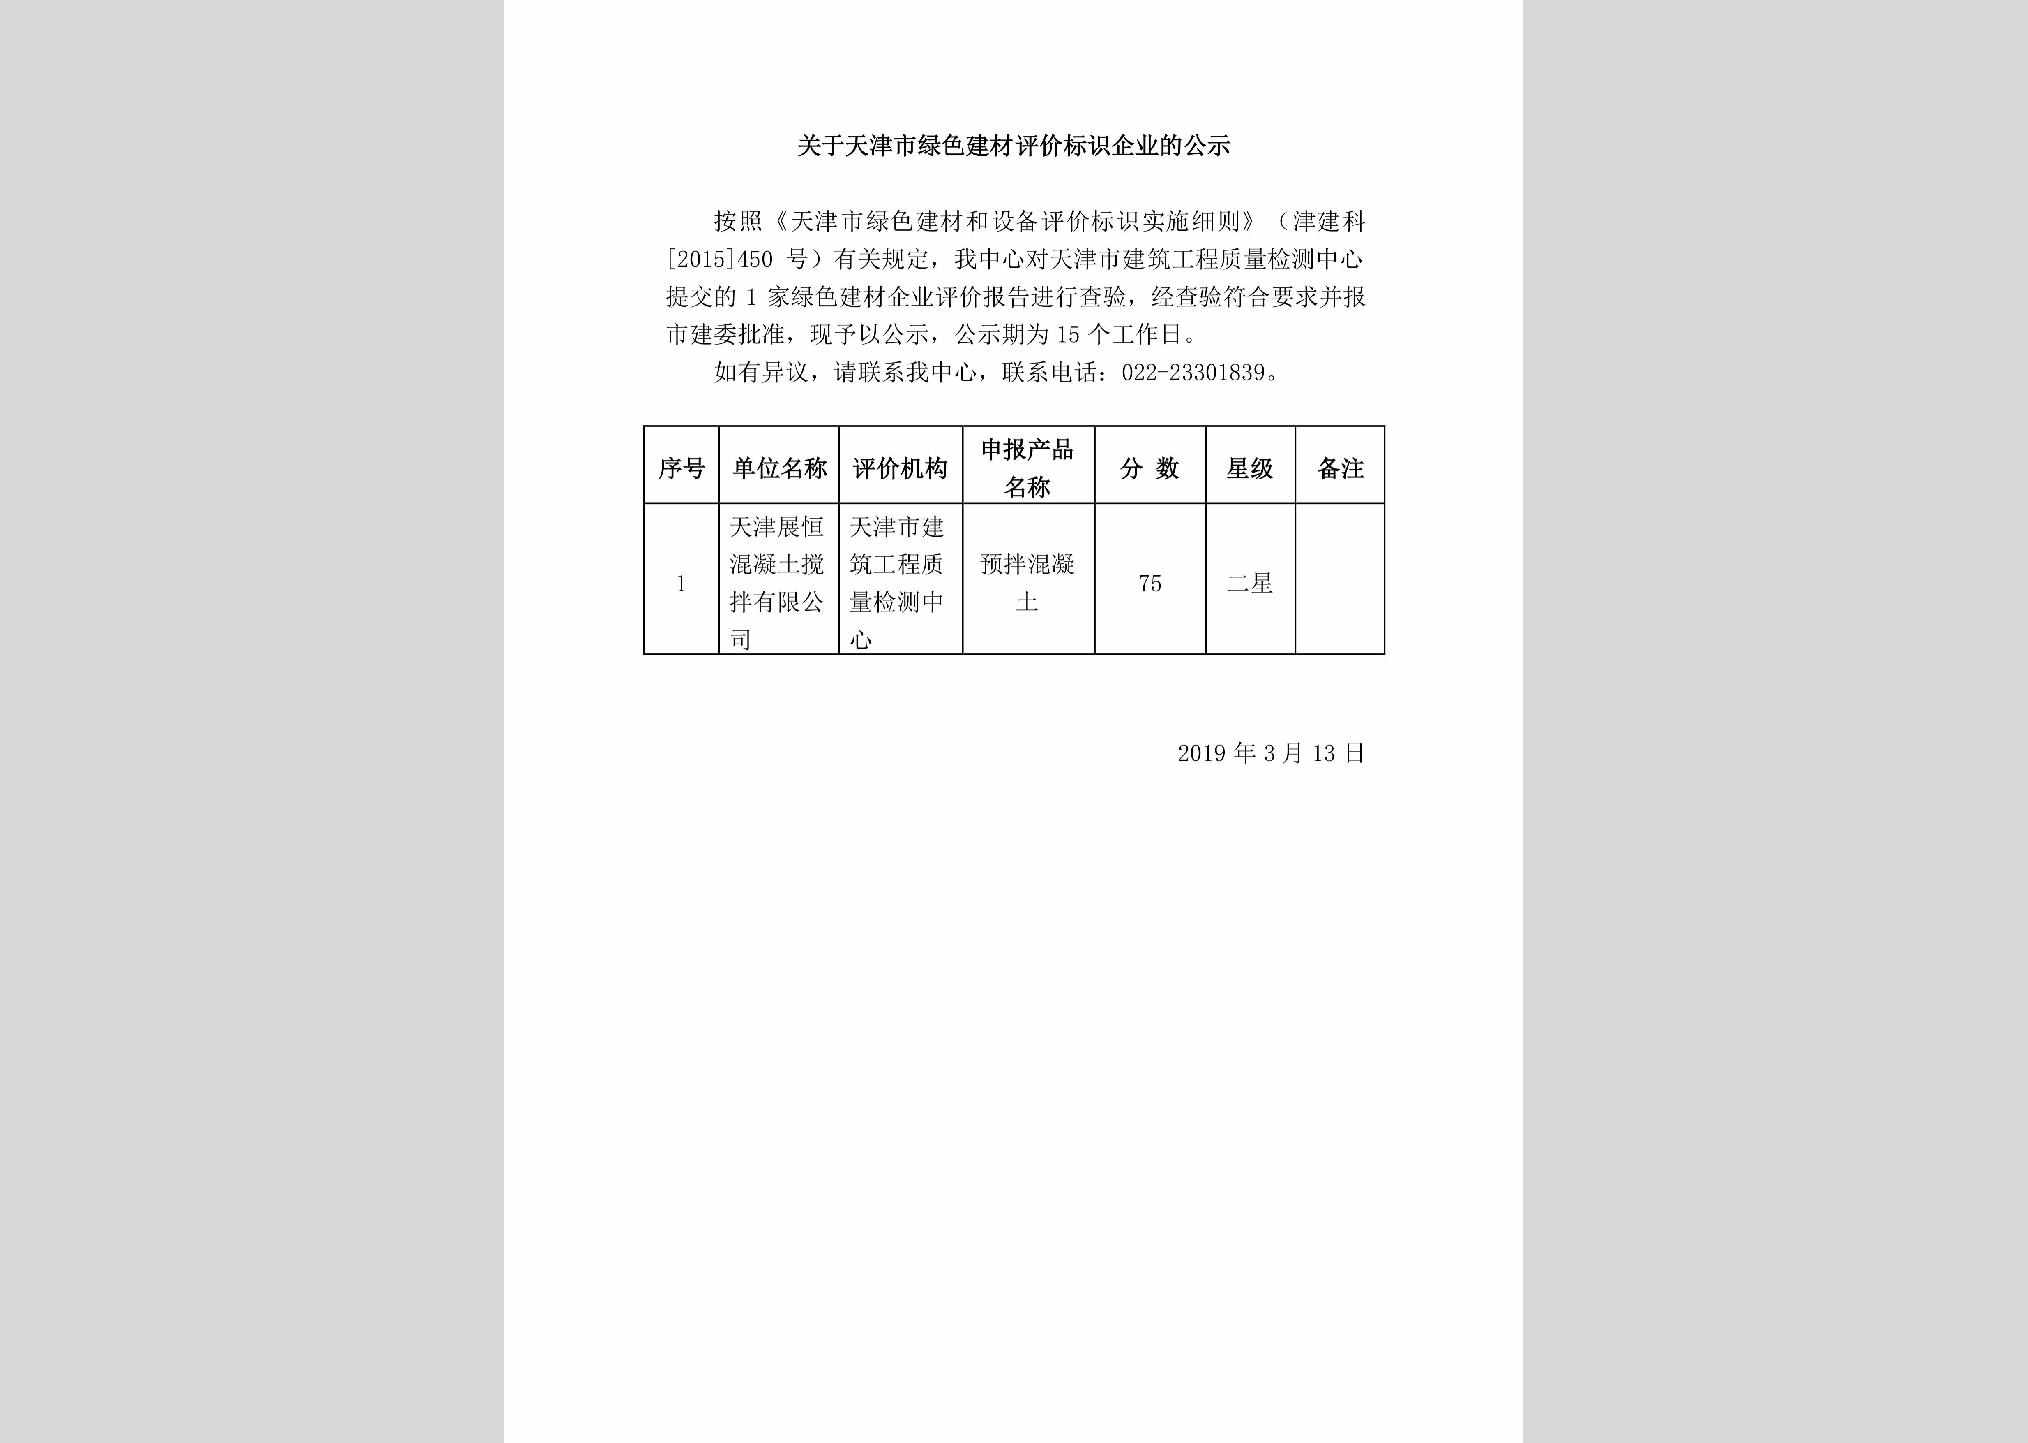 TJ-LSJCBSQY-2019：关于天津市绿色建材评价标识企业的公示